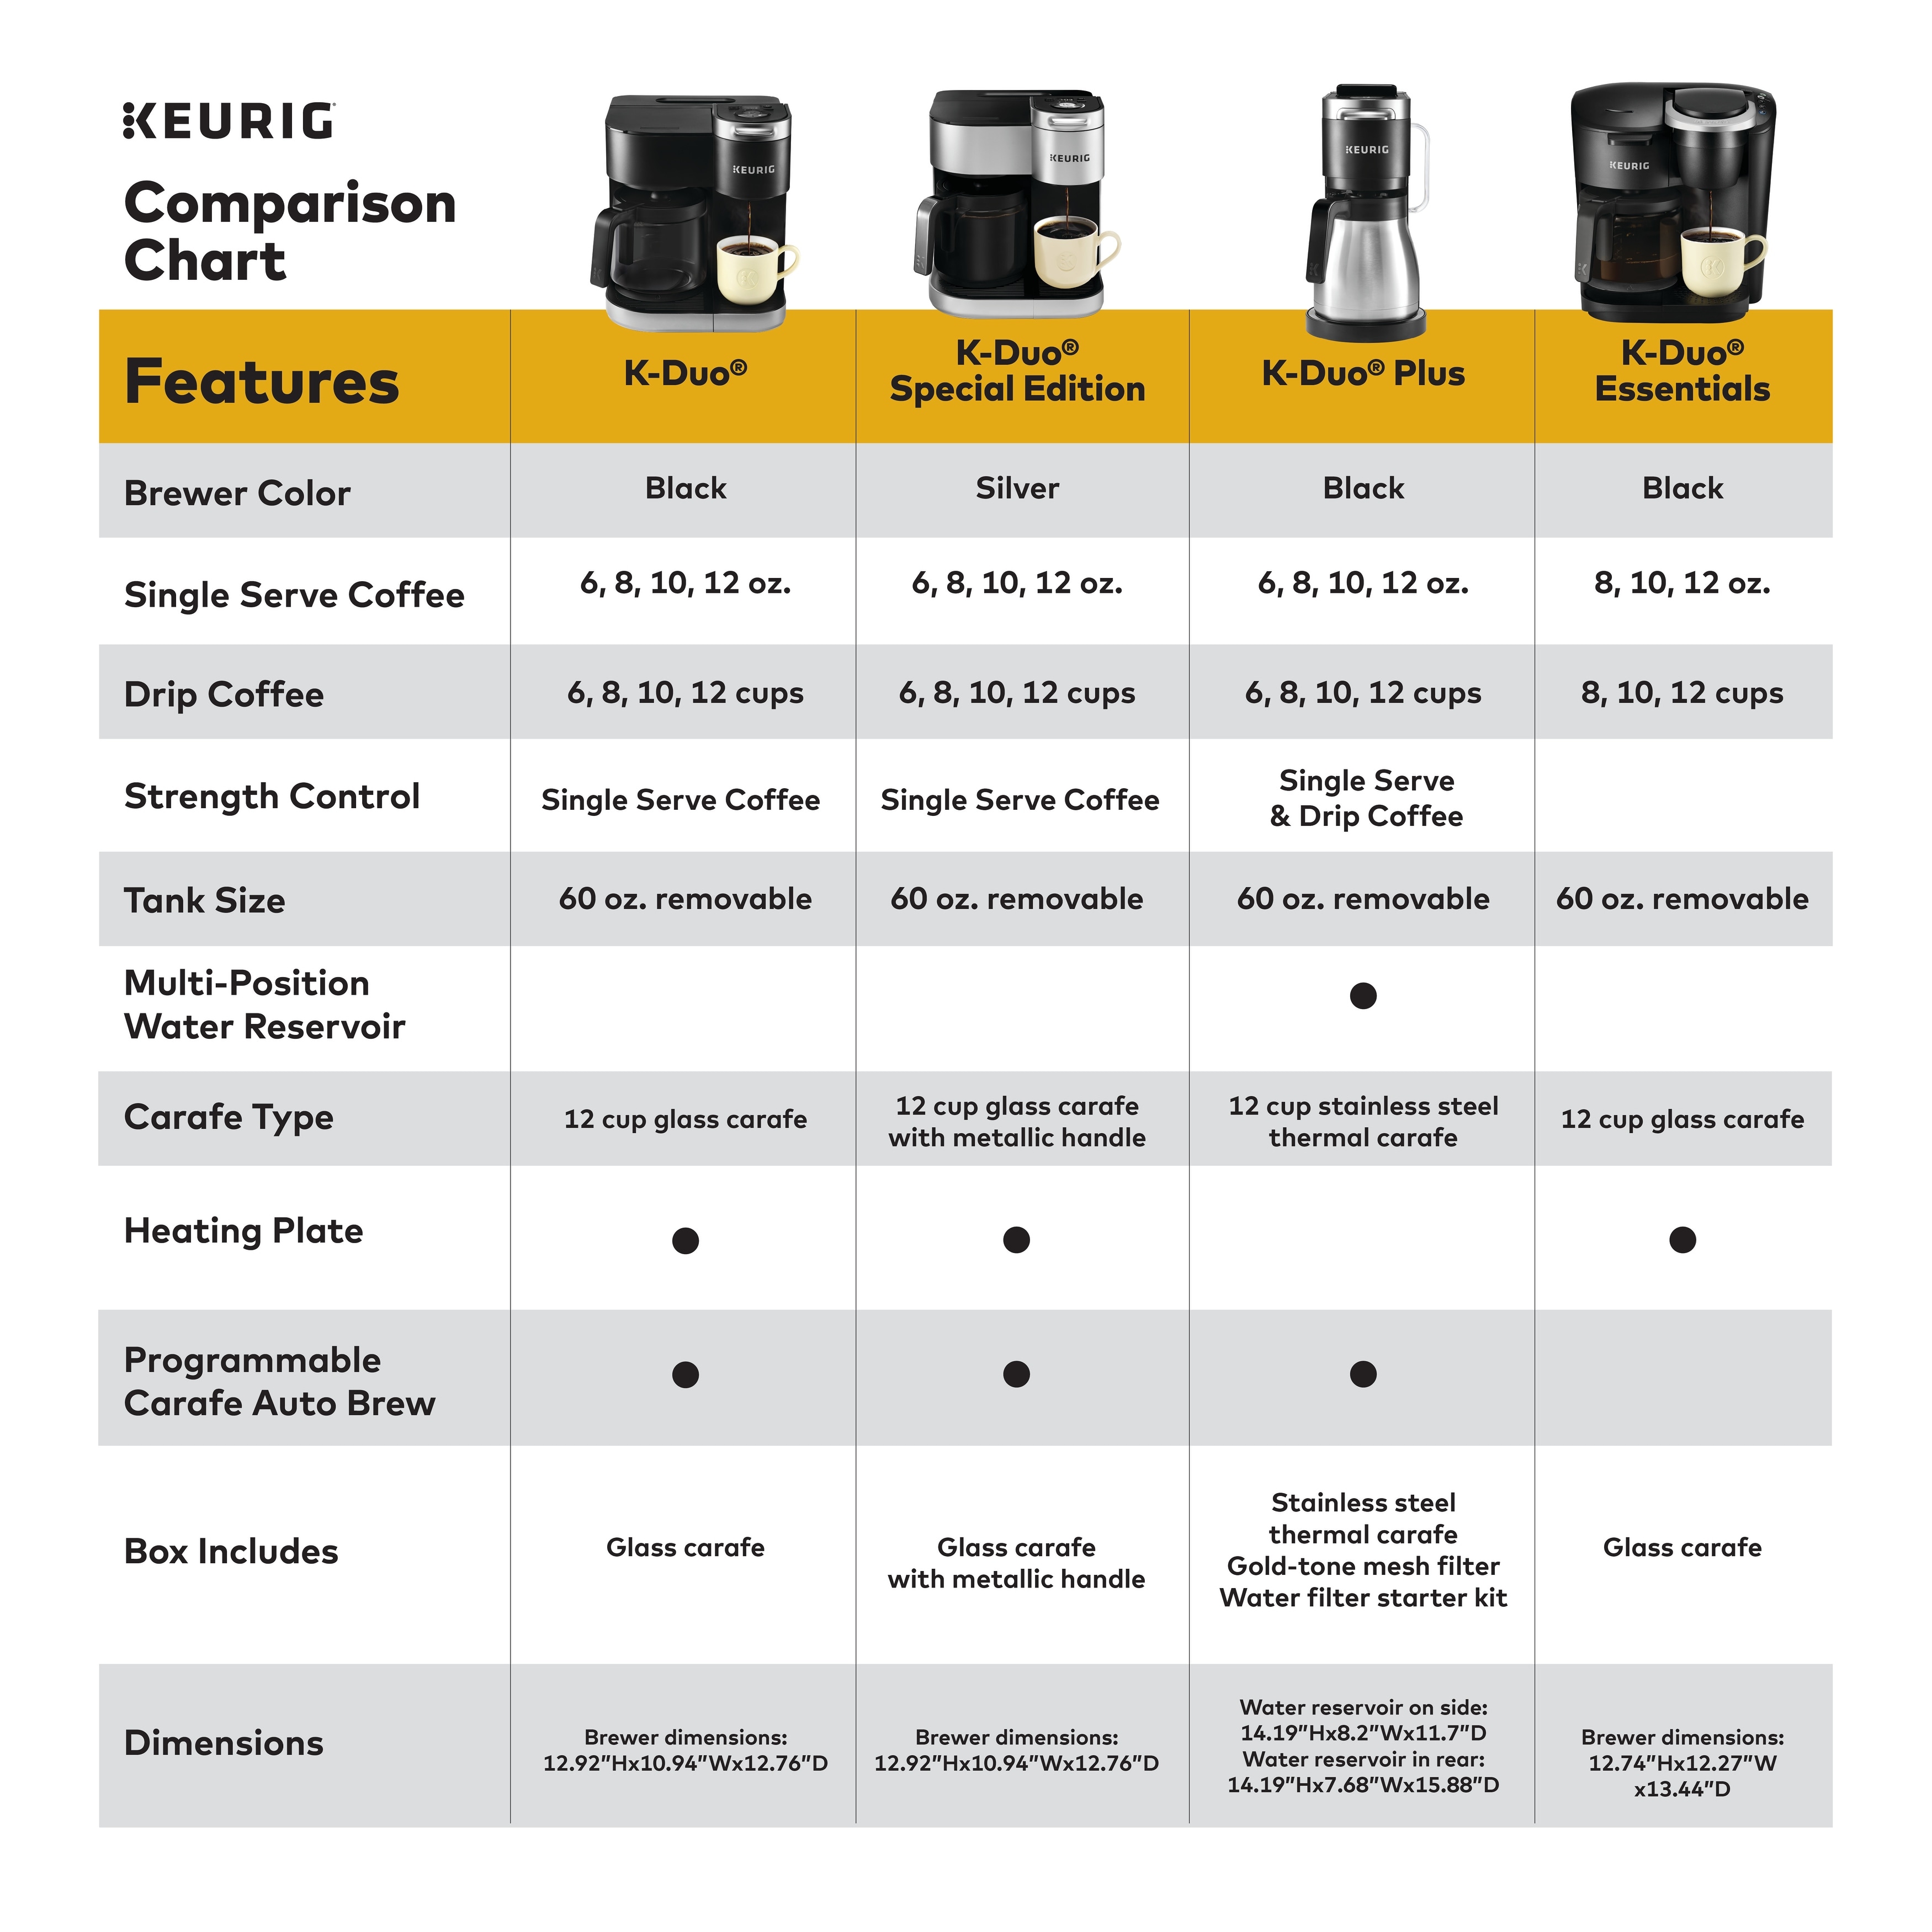 Keurig® K-Duo Special Edition Single Serve K-Cup Pod & Carafe